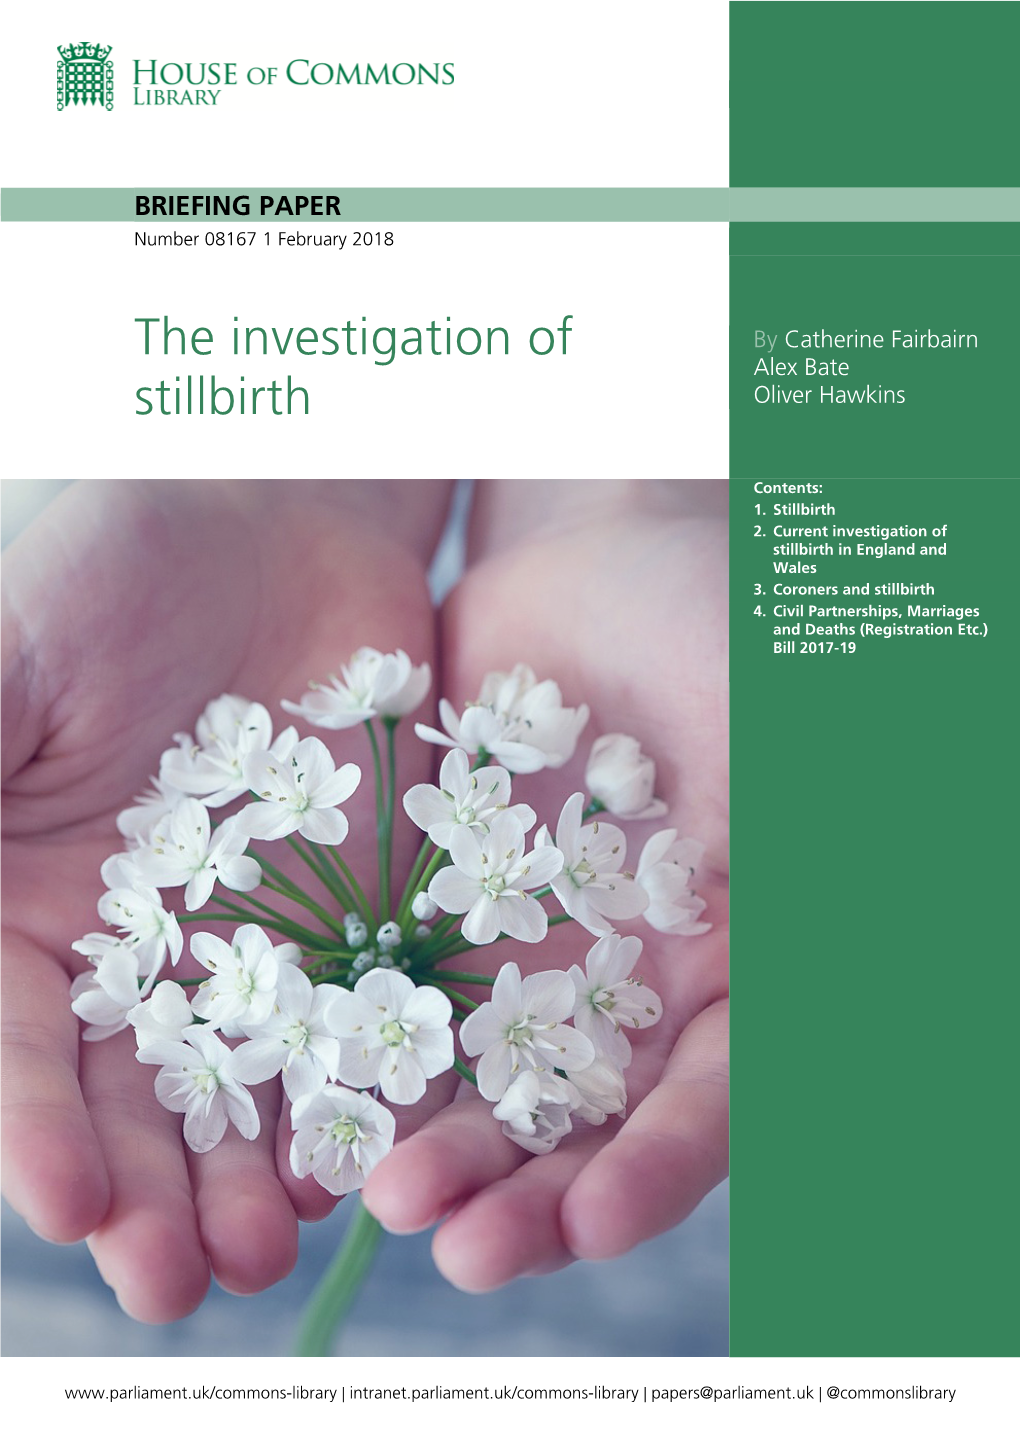 The Investigation of Stillbirth